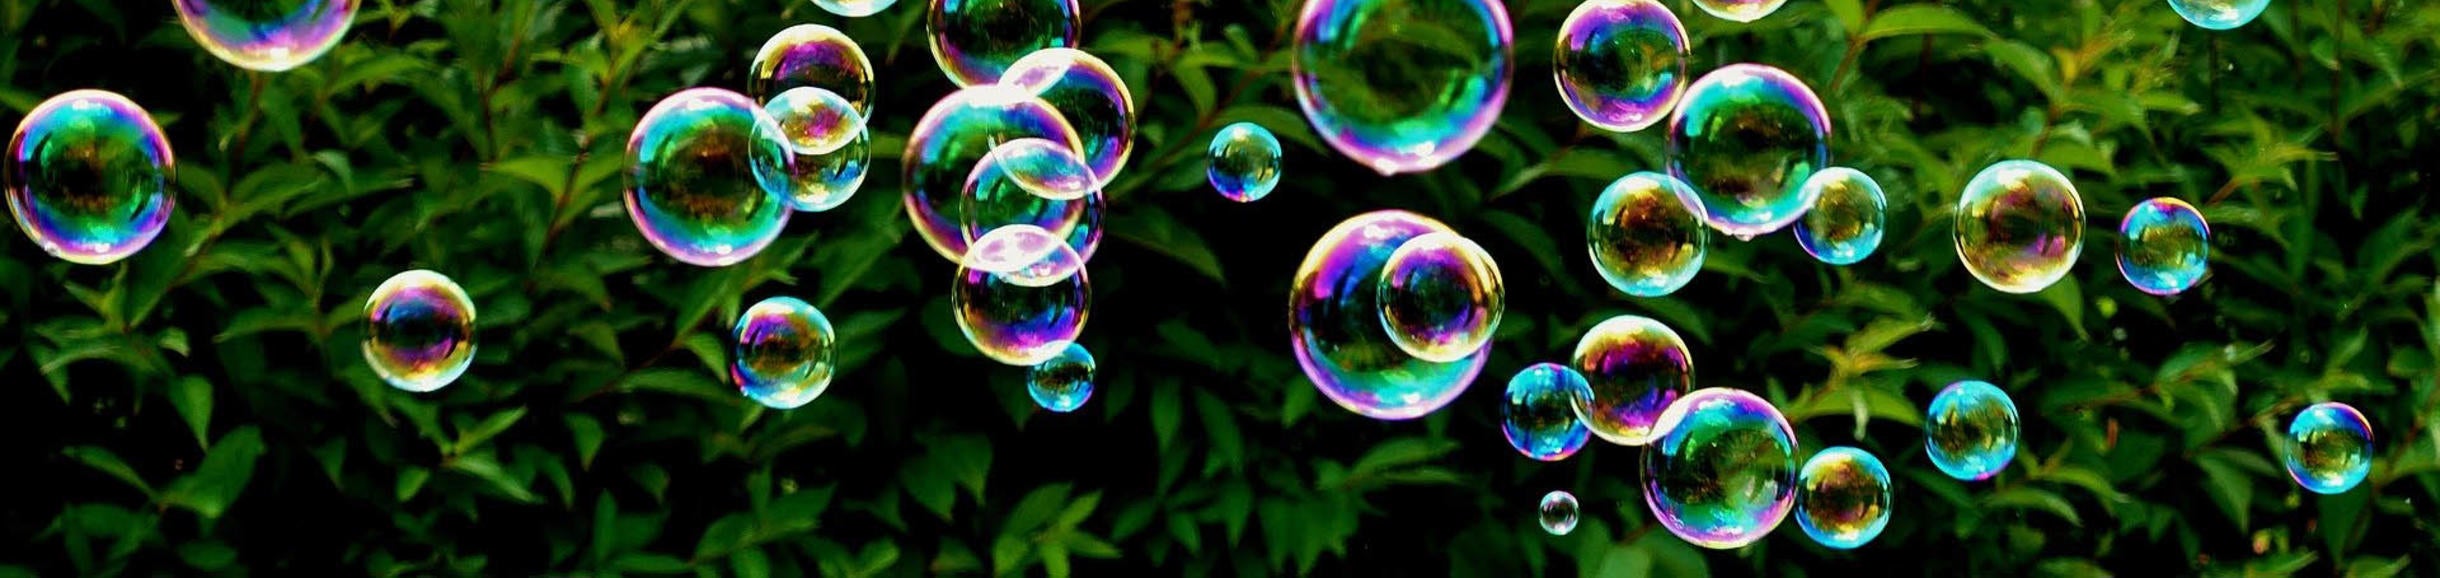 Bubbles / pixabay.com